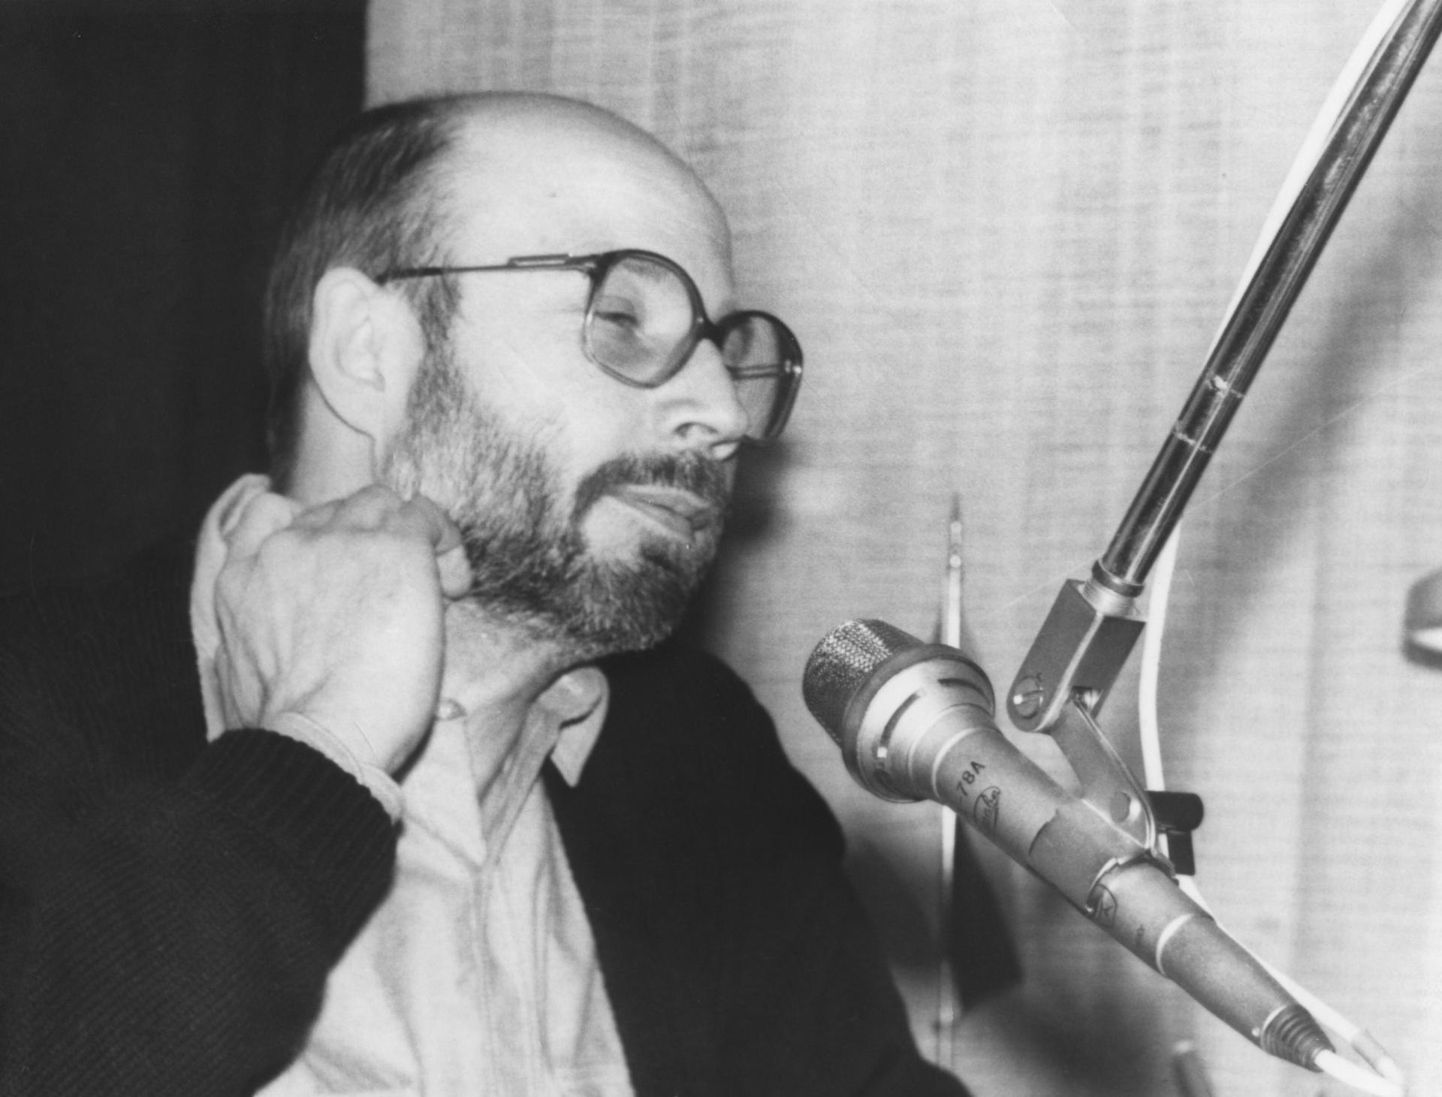 Viru raadio üks esimesi saatejuhte oli praeguseks meie hulgast lahkunud ajakirjanik Illar Mõttus, kes hiljem töötas ka Virumaa Teatajas.